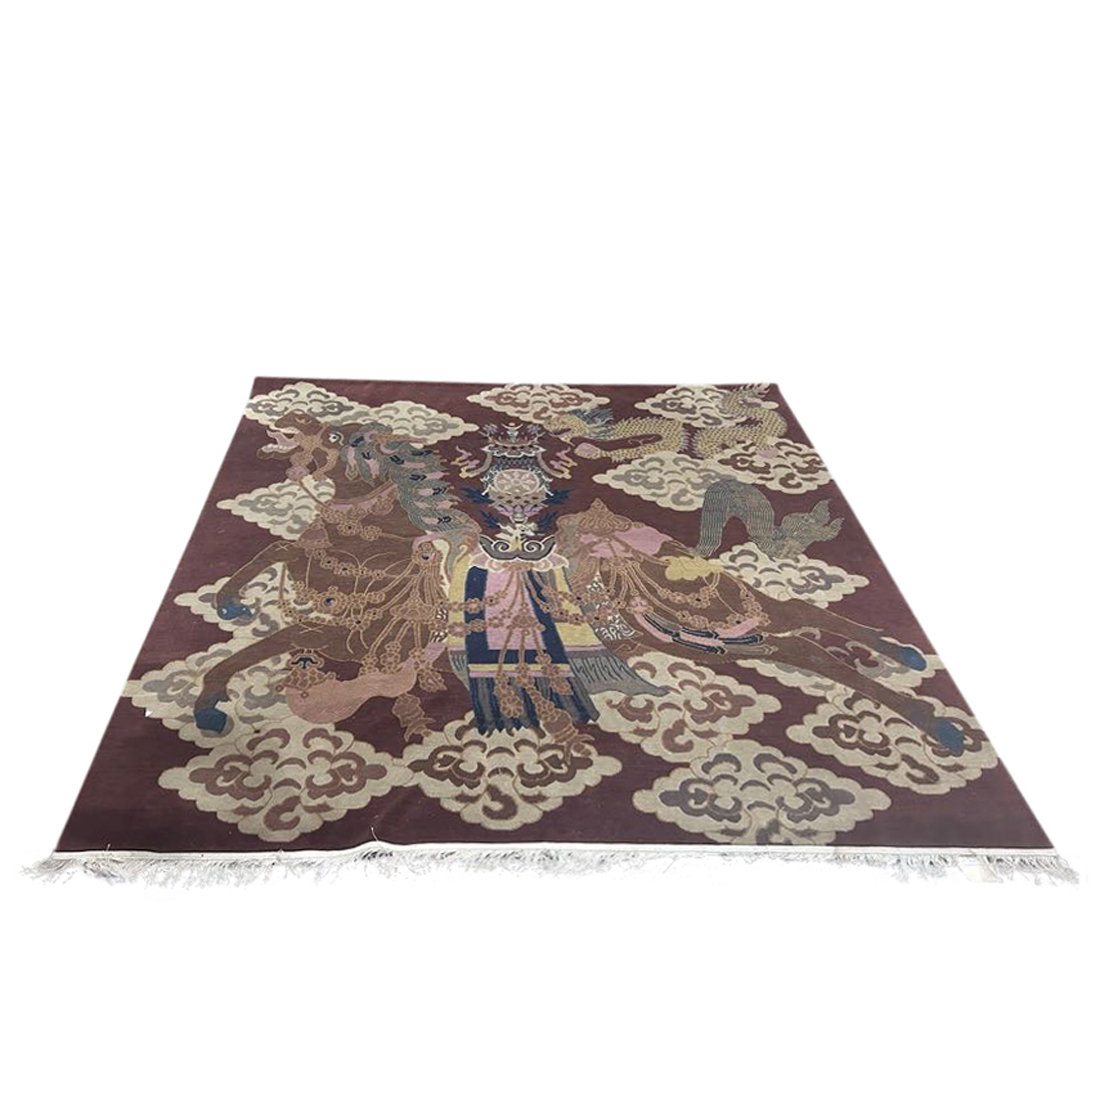 A NEPALESE CARPET A Nepalese carpet  3a12fa